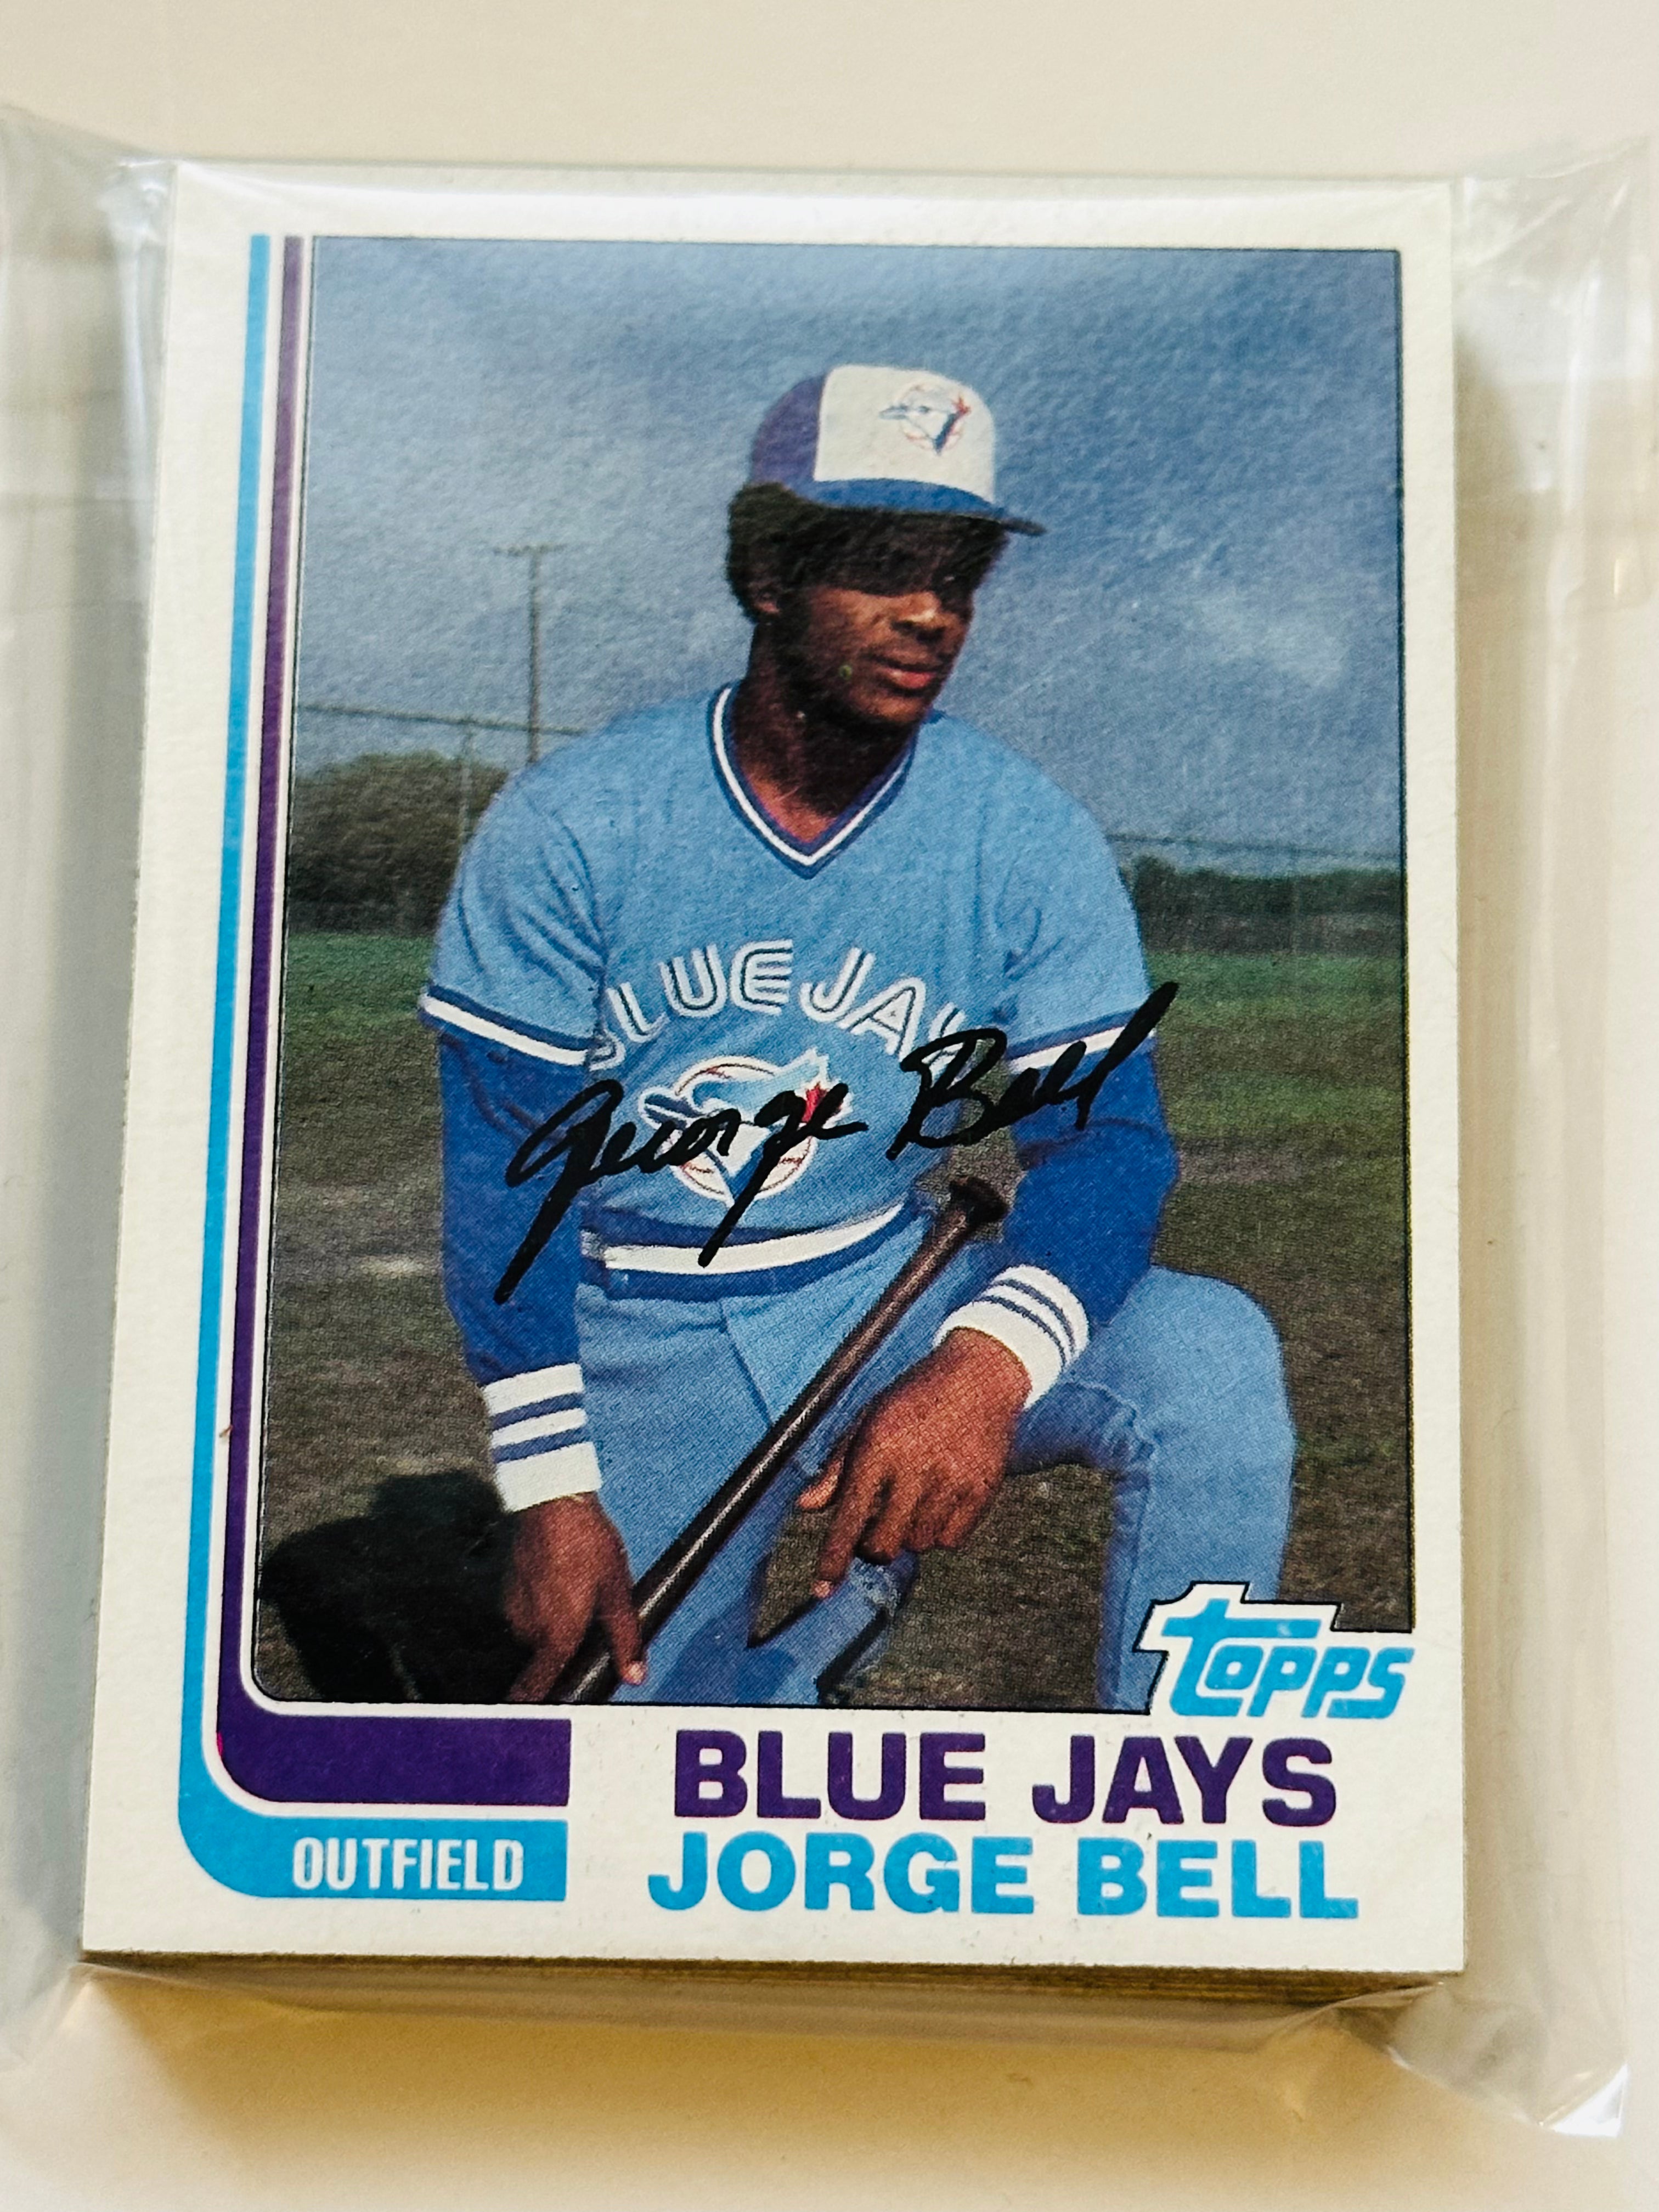 1982 Topps Blue Jays baseball team set